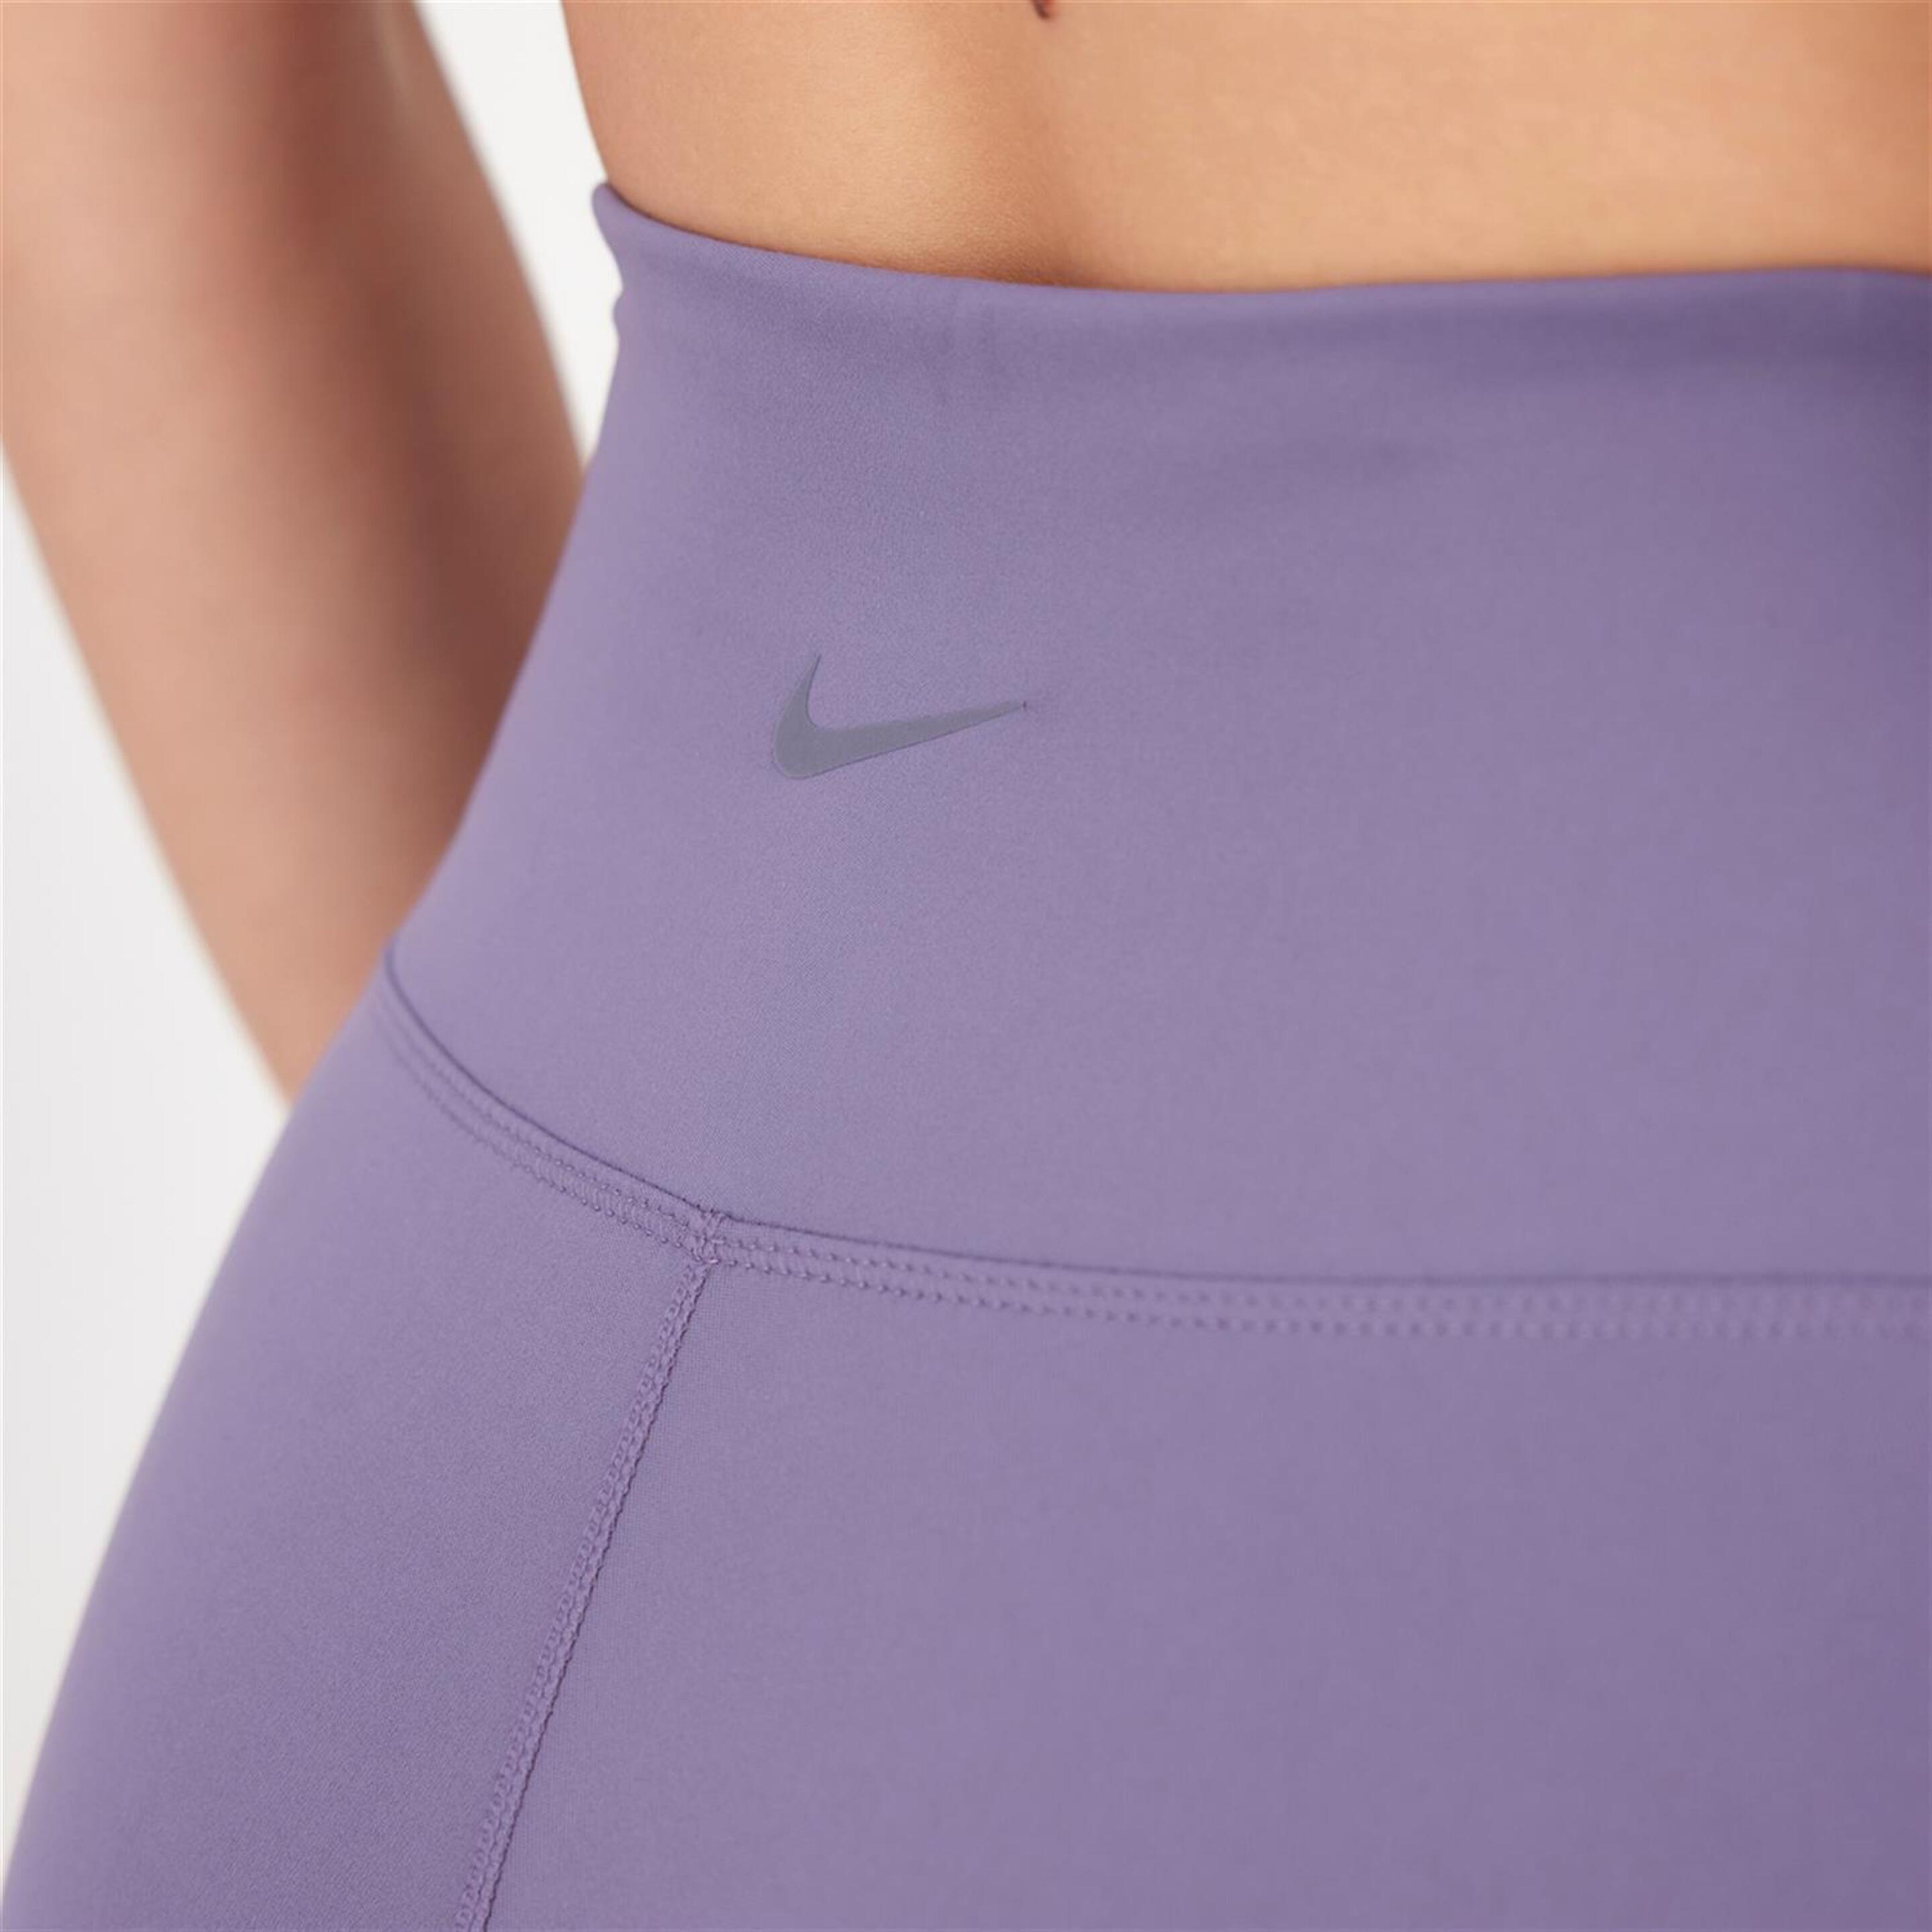 Nike One - Morado - Mallas Cortas Running Mujer